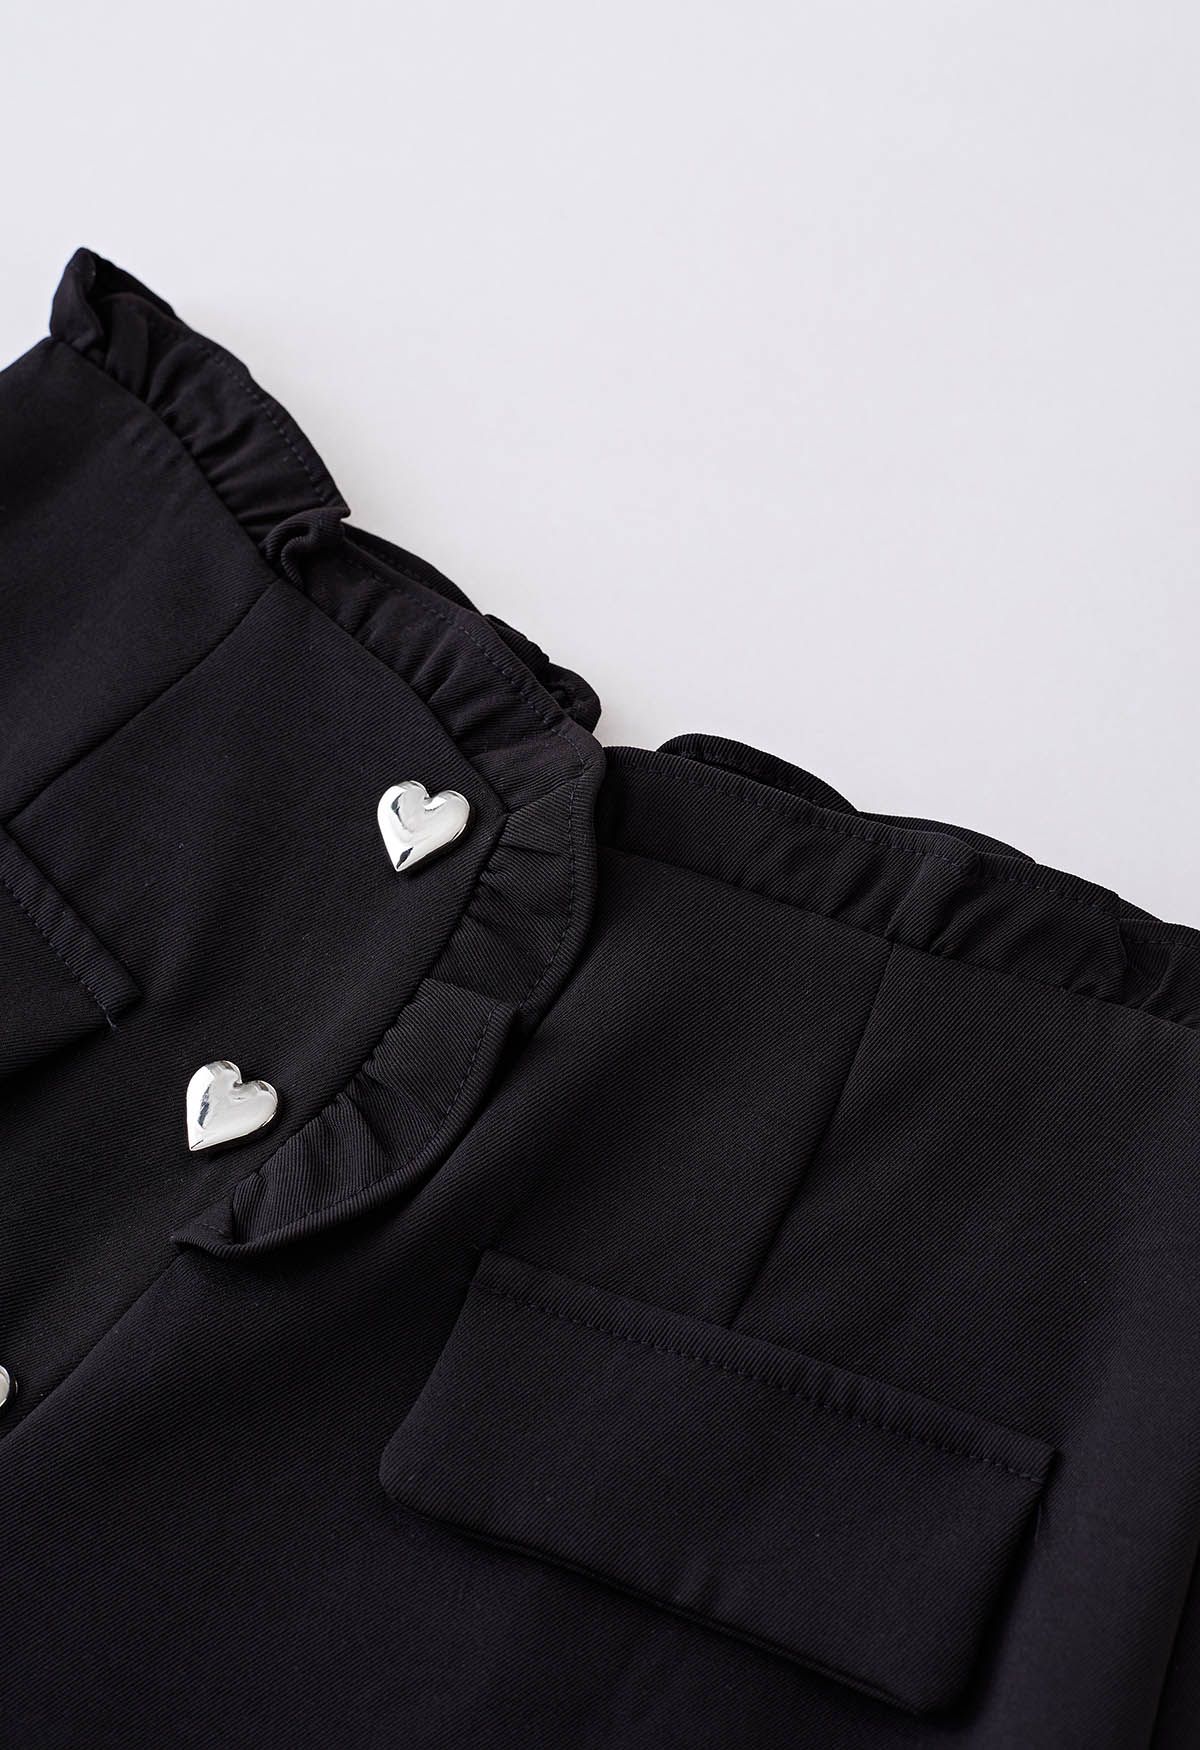 Shorts con volantes y botones en forma de corazón en negro